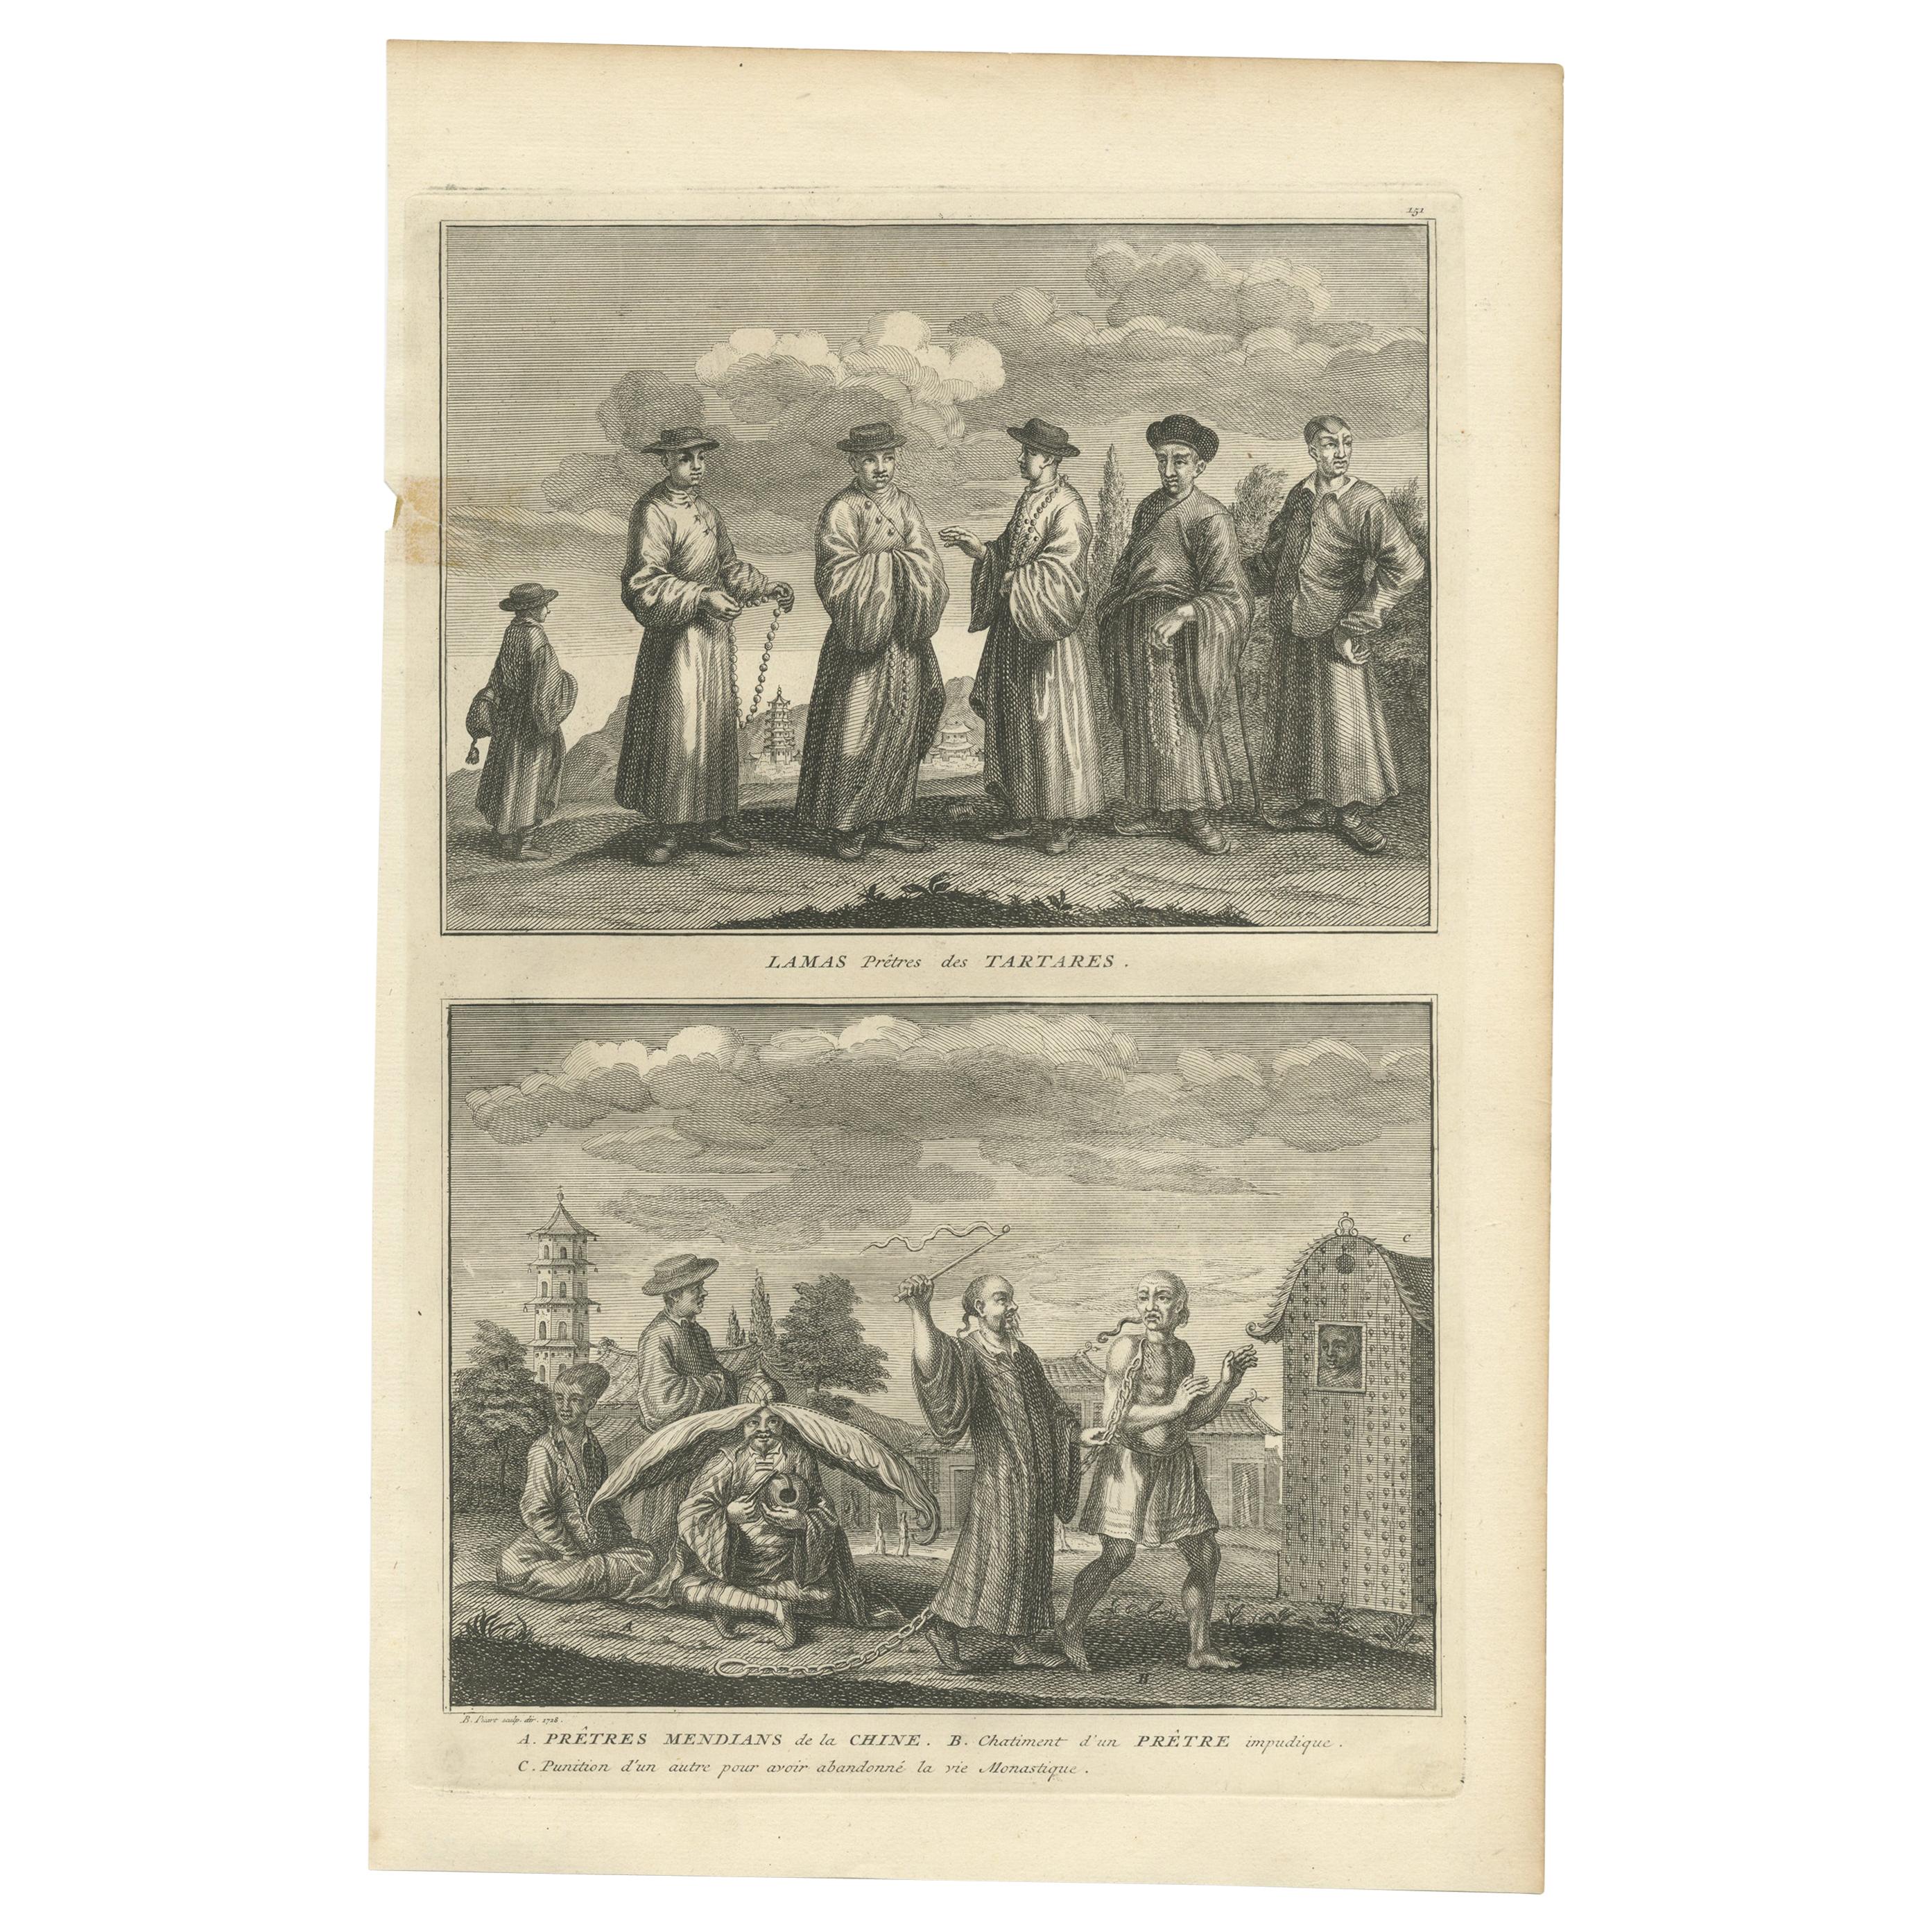 Impression ancienne de prêtres tatarians et de prêtres Mendian par Picart, vers 1730